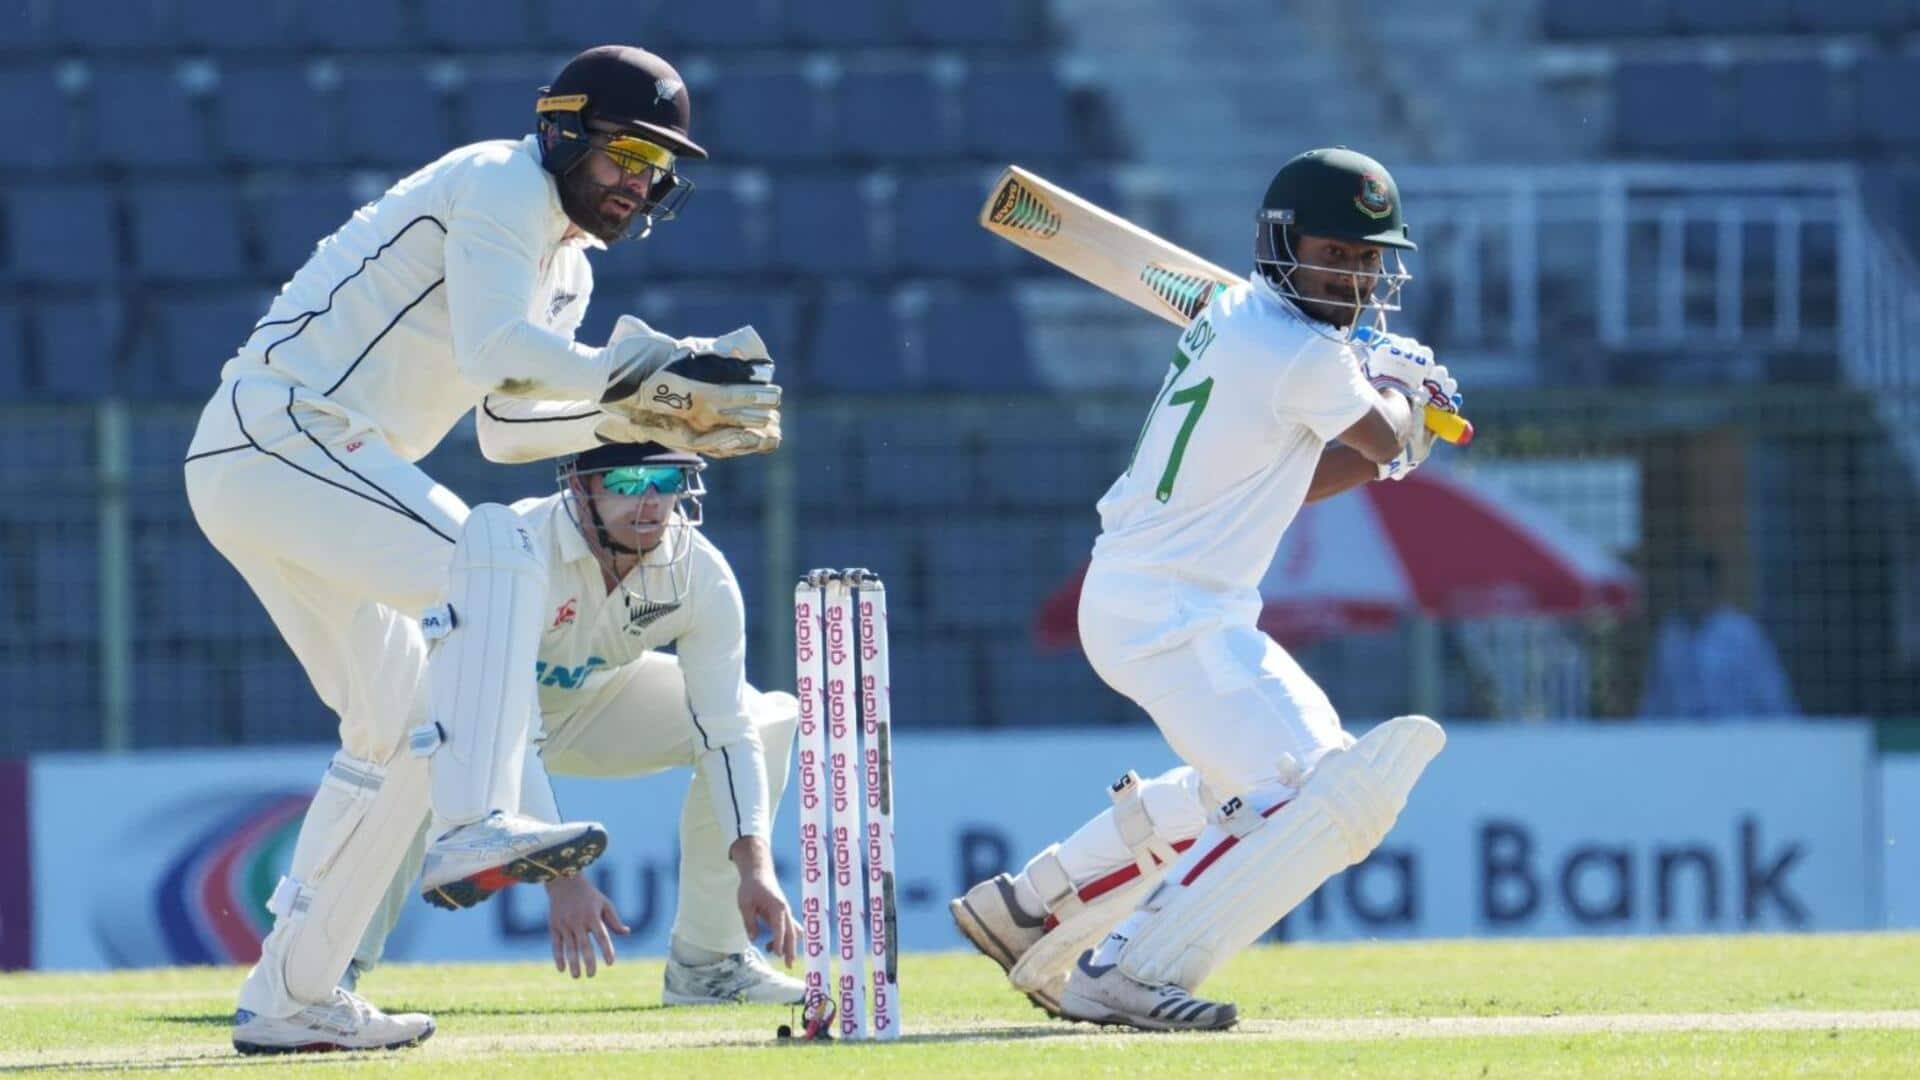 बांग्लादेश बनाम न्यूजीलैंड: महमूदुल हसन जॉय अपना दूसरा टेस्ट शतक बनाने से चूके, जानिए उनके आंकड़े 